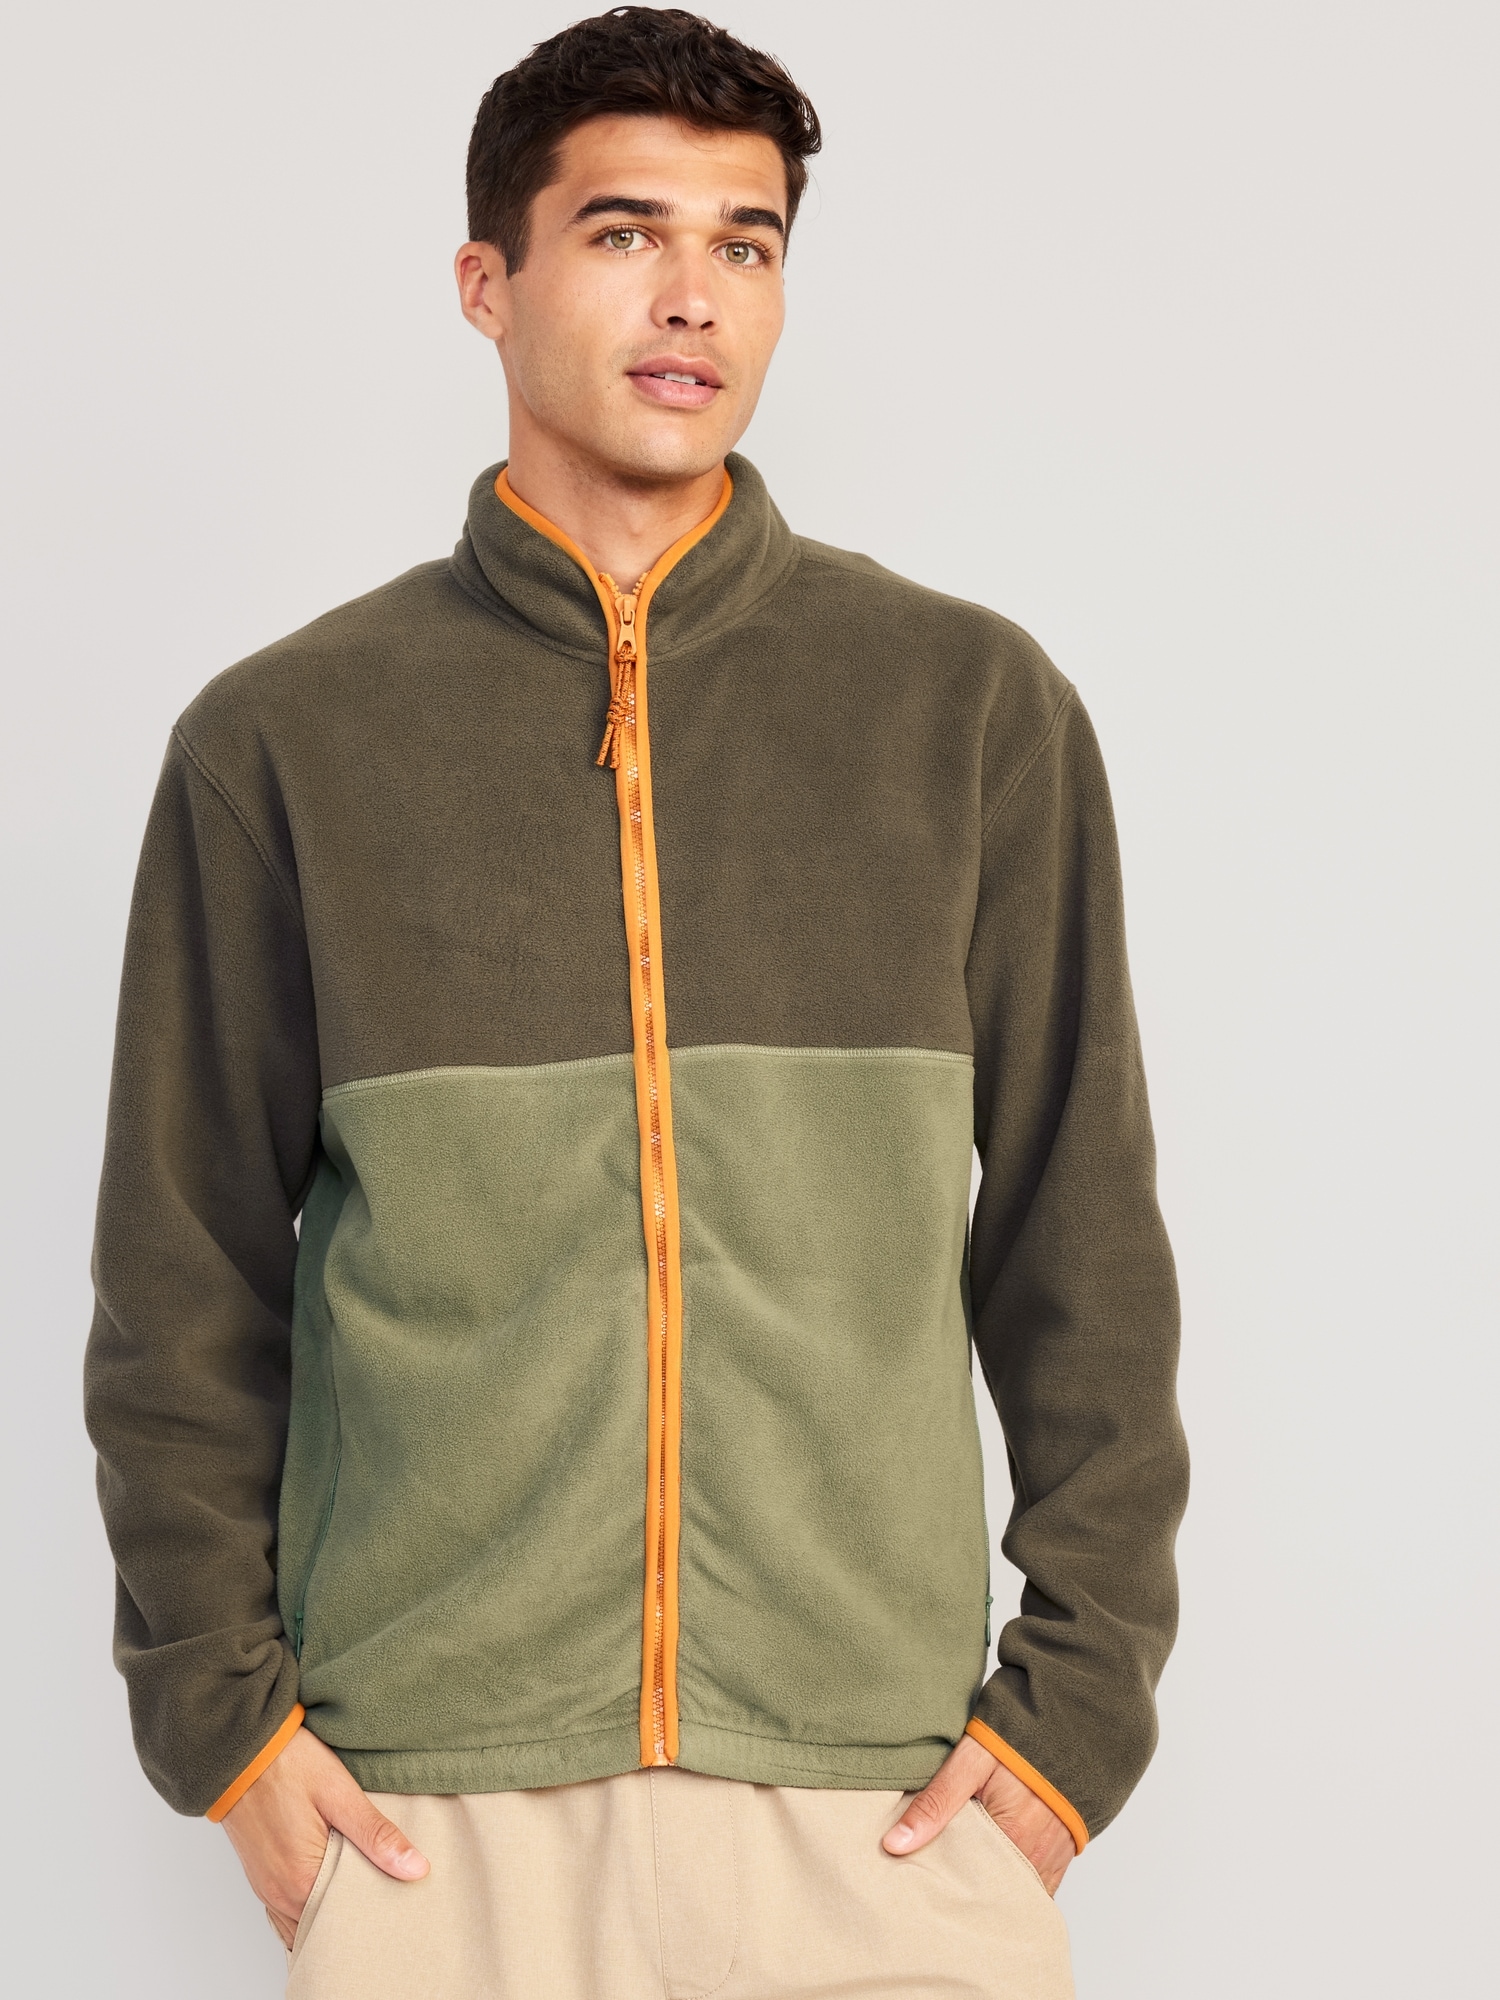 Oversized Micro-Fleece Zip Jacket for Men | Old Navy